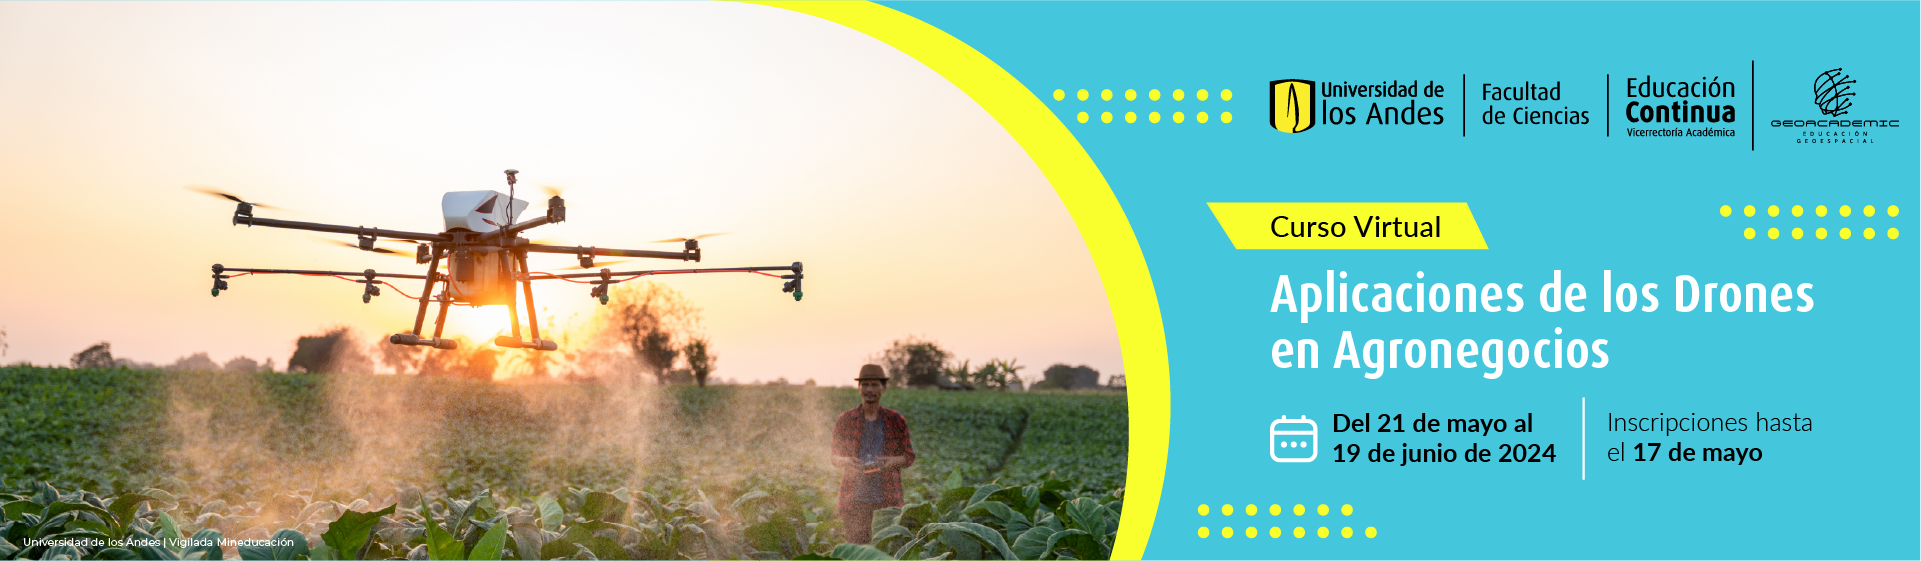 aplicaciones-de-los-drones-en-agronegocios